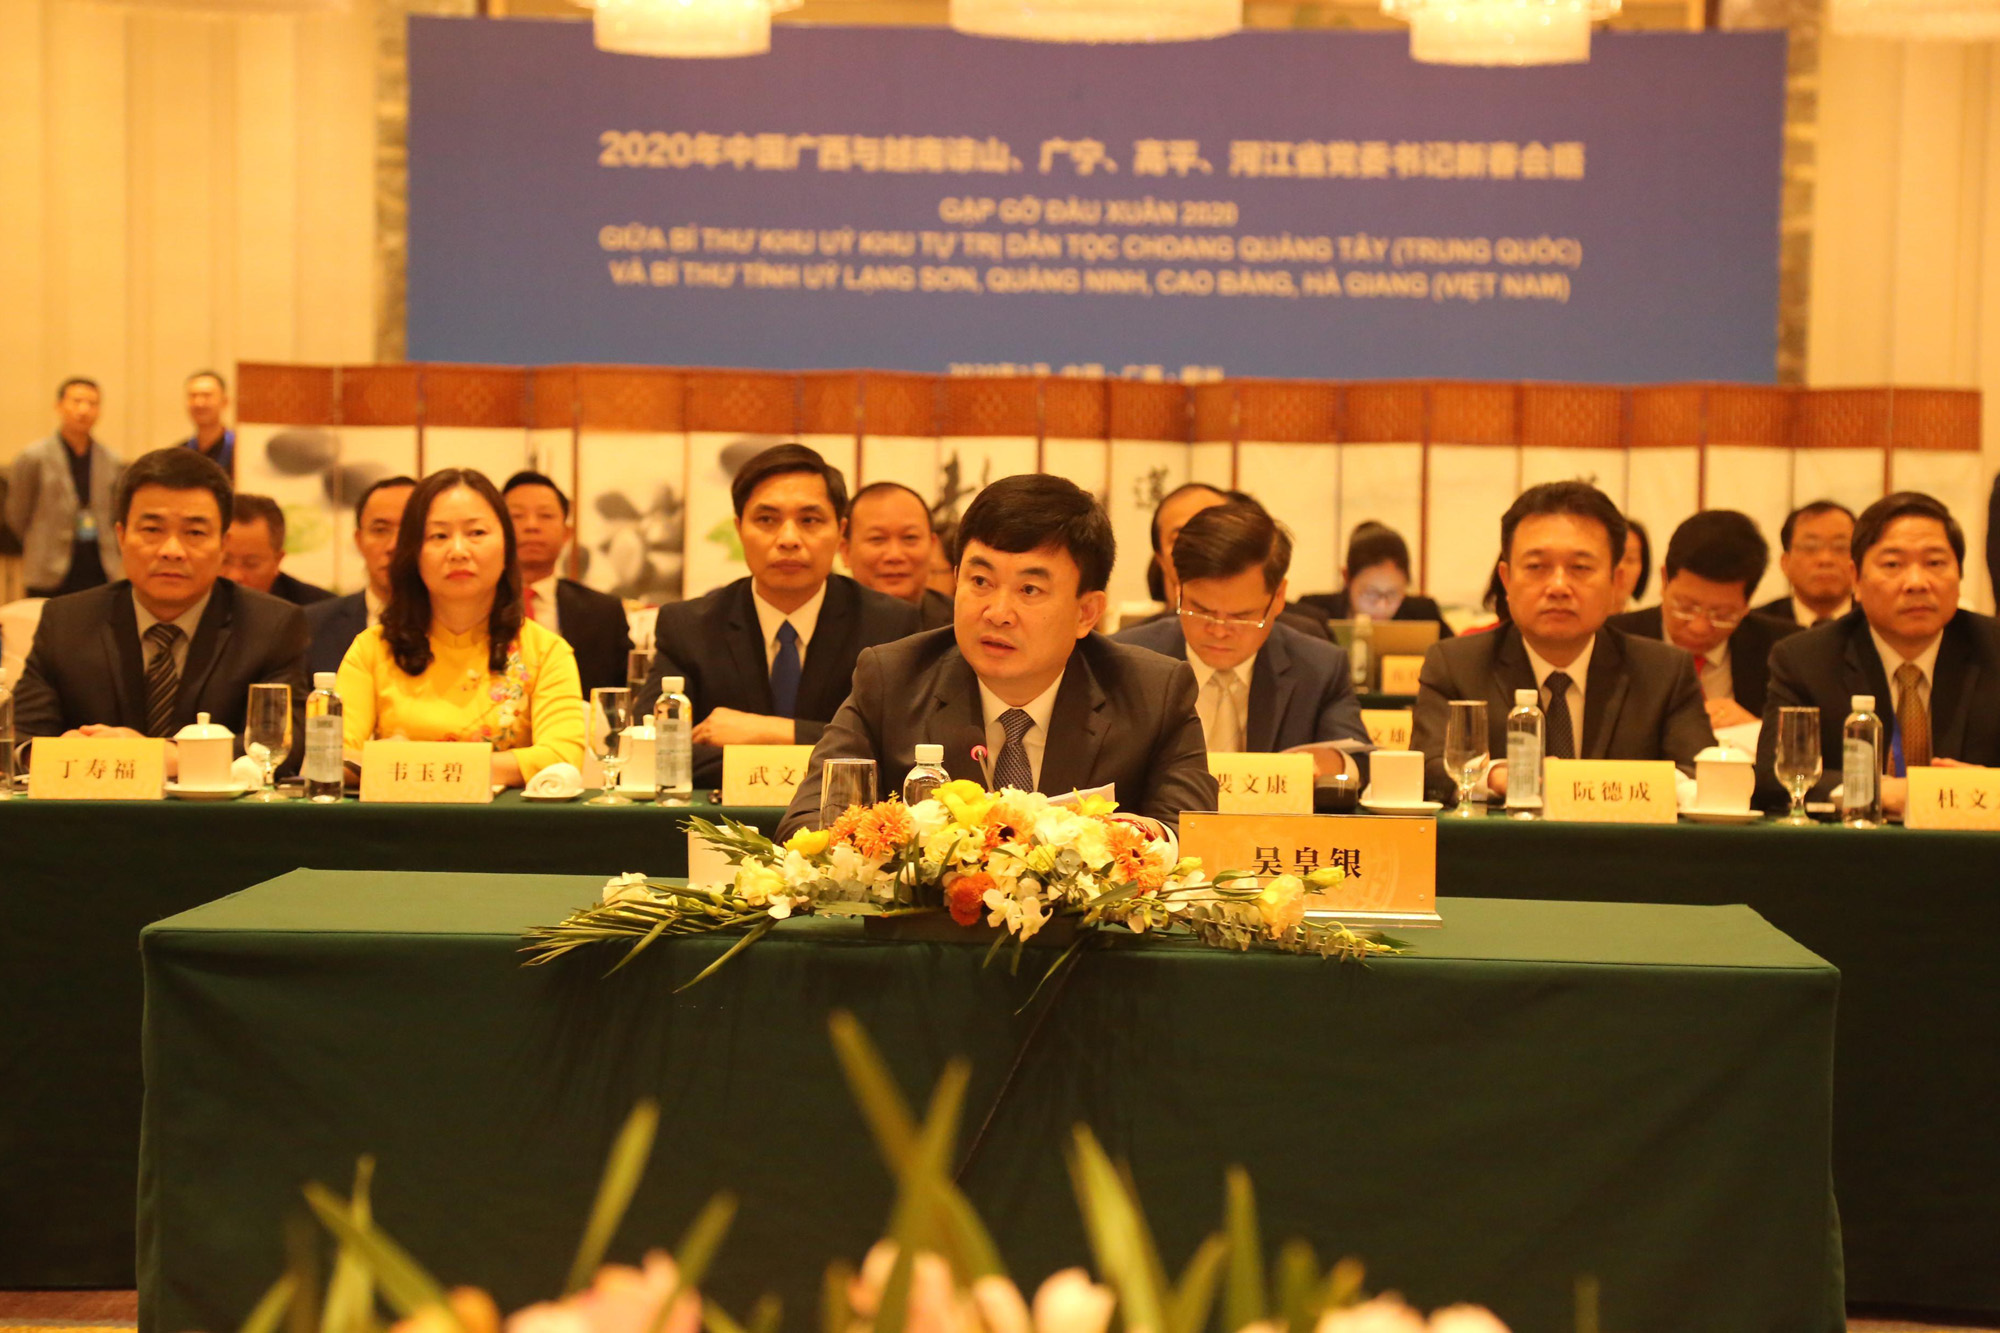 Đồng chí Ngô Hoàng Ngân, Phó Bí thư Thường trực Tỉnh ủy Quảng Ninh, phát biểu tại Hội đàm gặp gỡ đầu Xuân 2020 tại TP Liễu Châu, Quảng Tây, Trung Quốc 